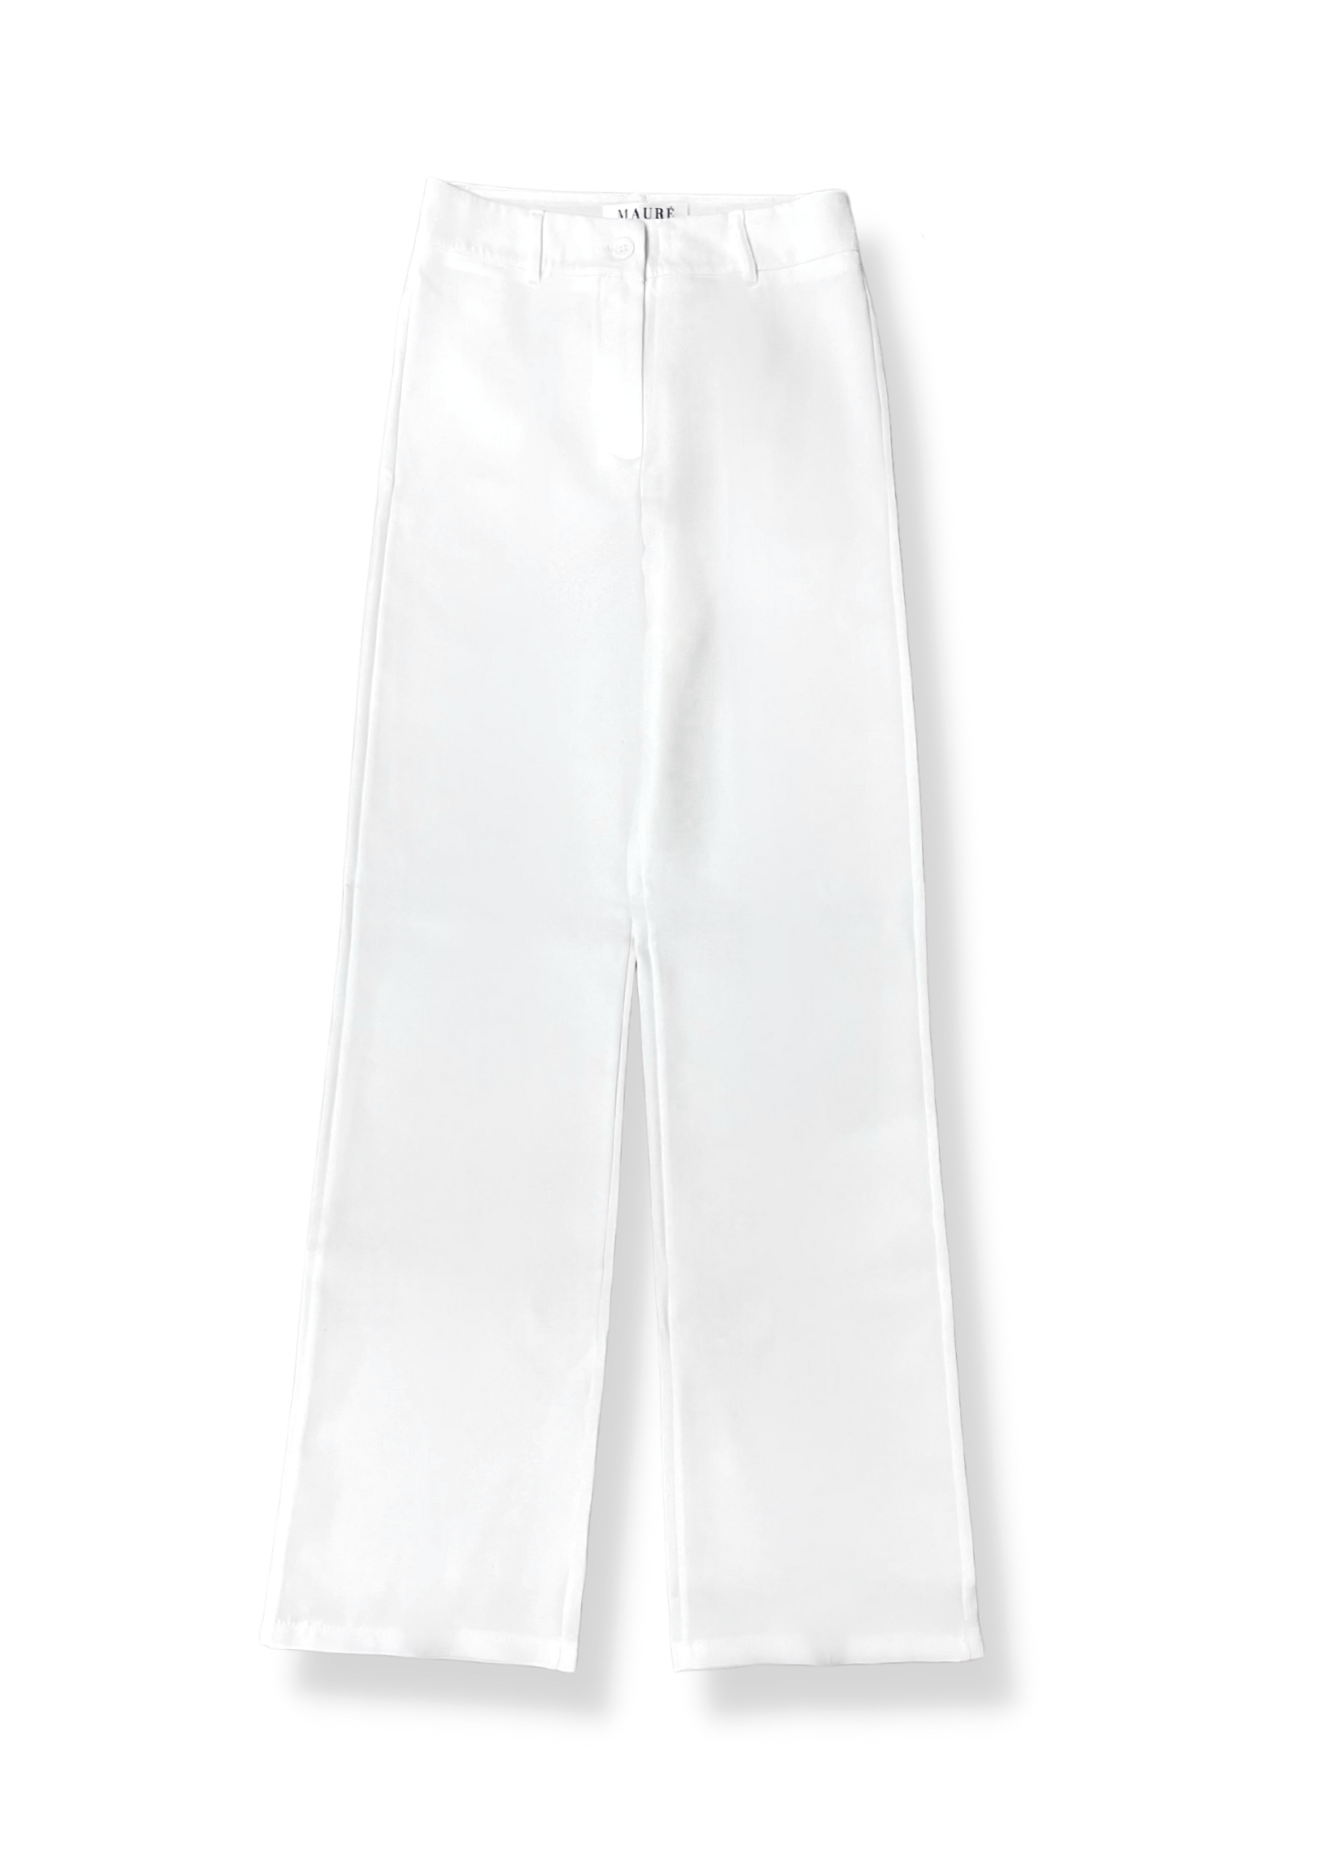 Pantalon droit classique blanc (REGULAR)